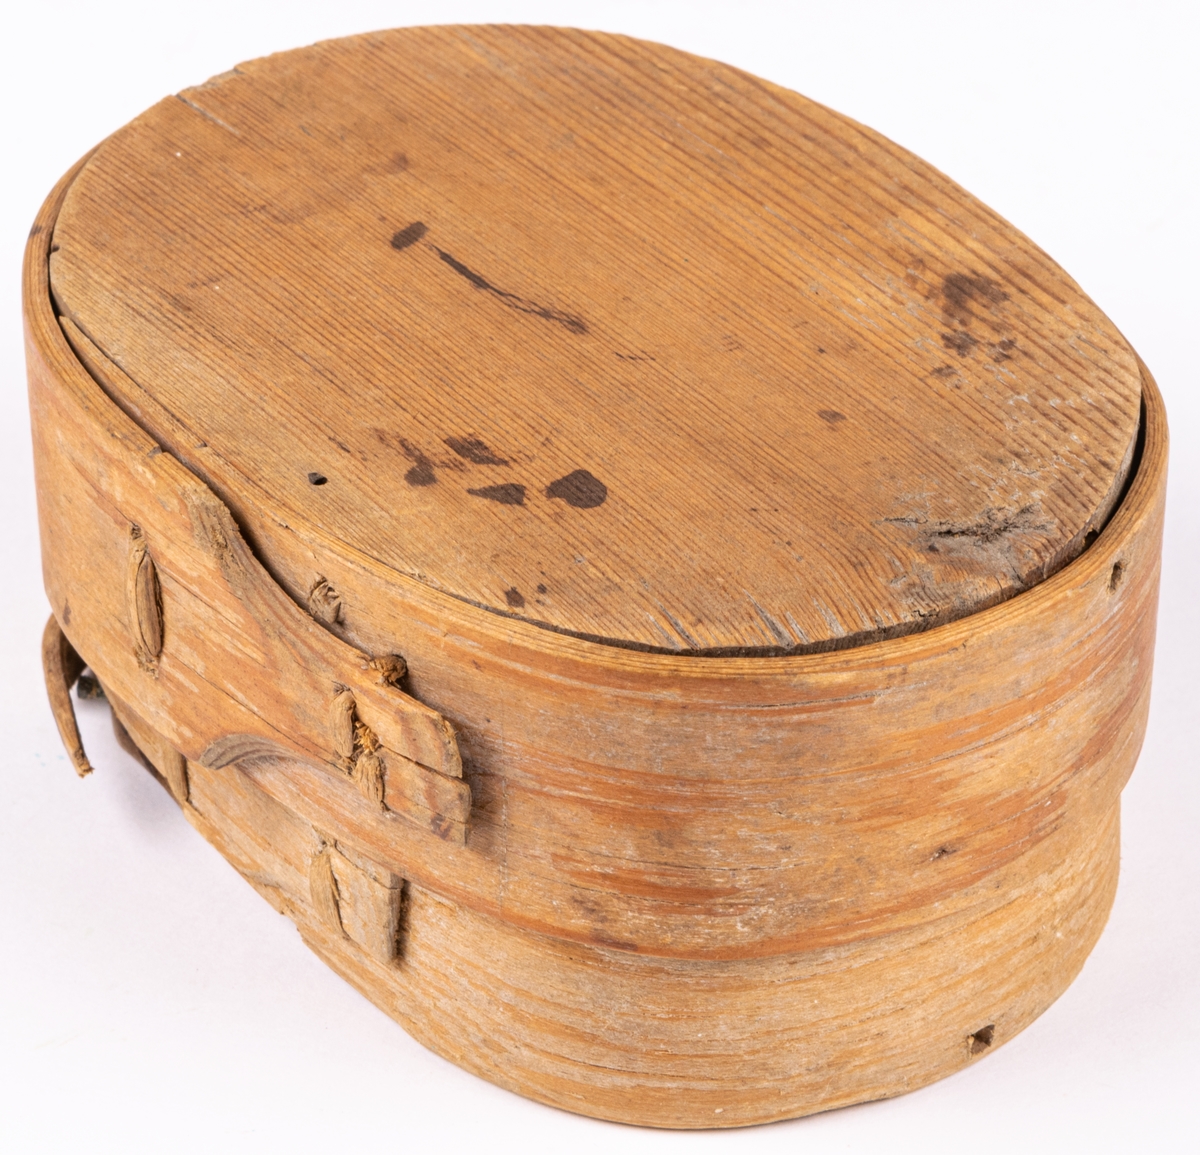 Ask, av trä, platt låda som öppnas med klaff på smalsida. Prydd med karvsnitt, sex-uddastjärnor, rosor m.m.
Kan ha använts för tobak.